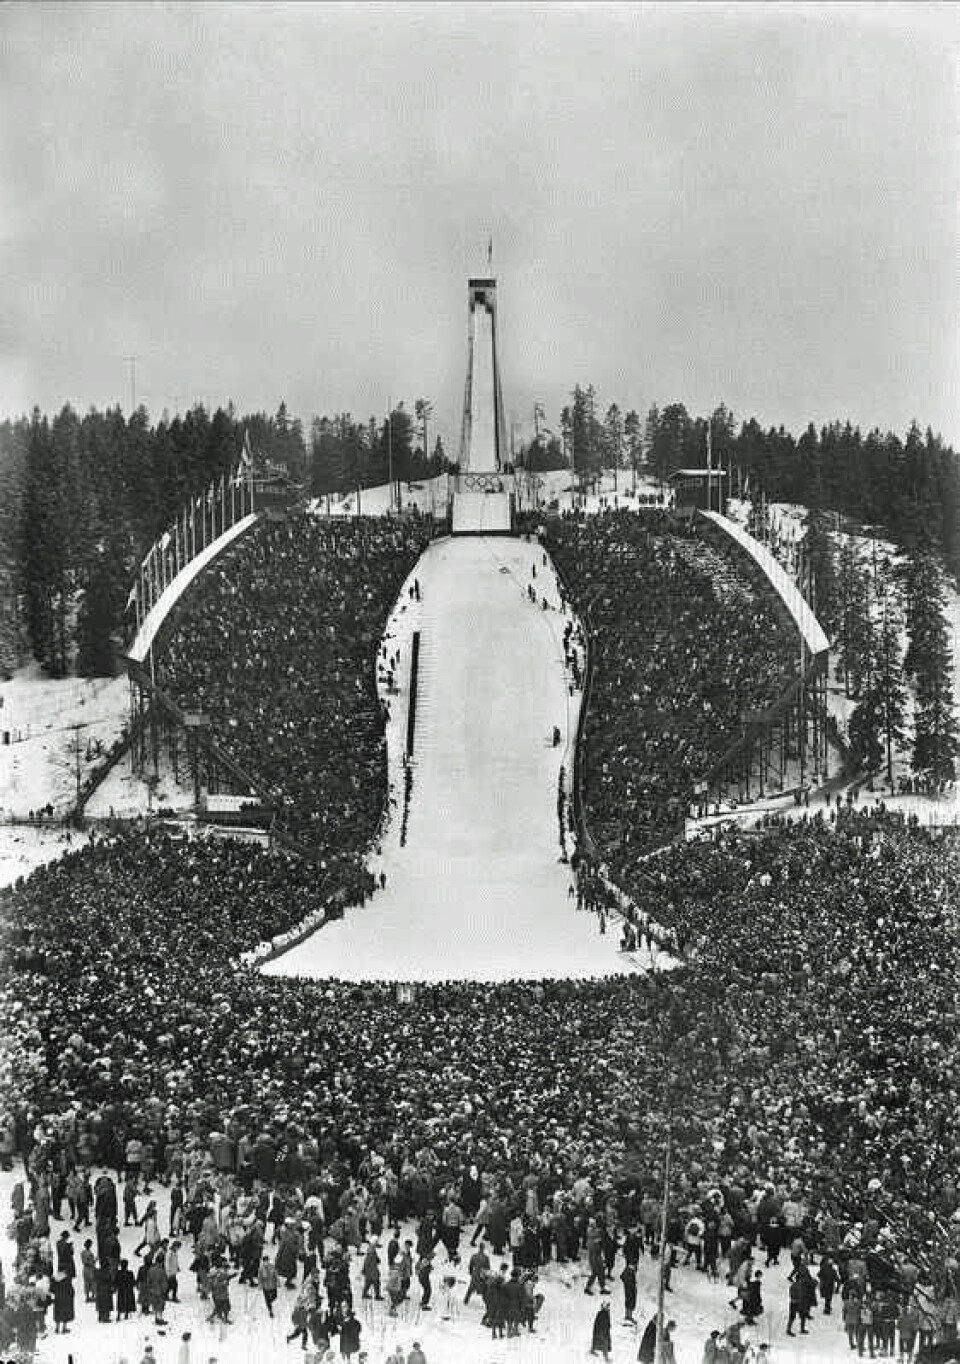 Slik så det ut i Holmenkollen da Oslo arrangerte OL i 1952. Om 30-40 år vil ikke dette være mulig, ifølge rapporten. (Foto: Robert Charles Wilse)